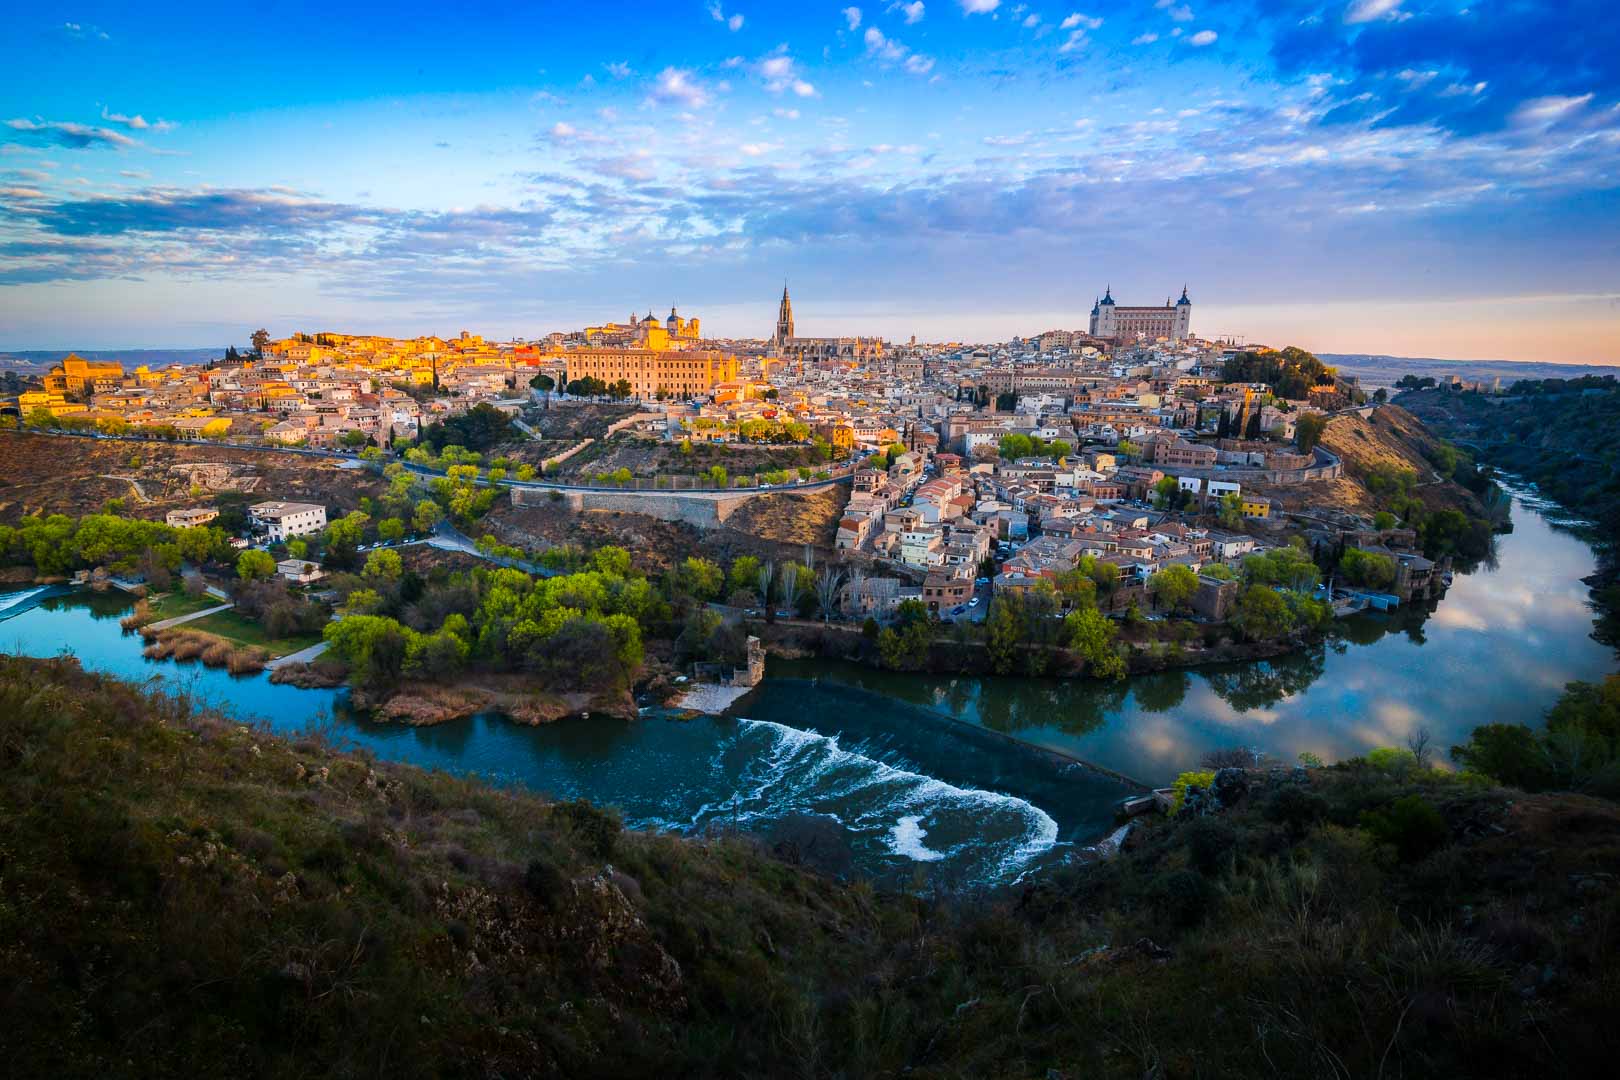 Mirador del Valle Toledo – The Best Viewpoint over Toledo